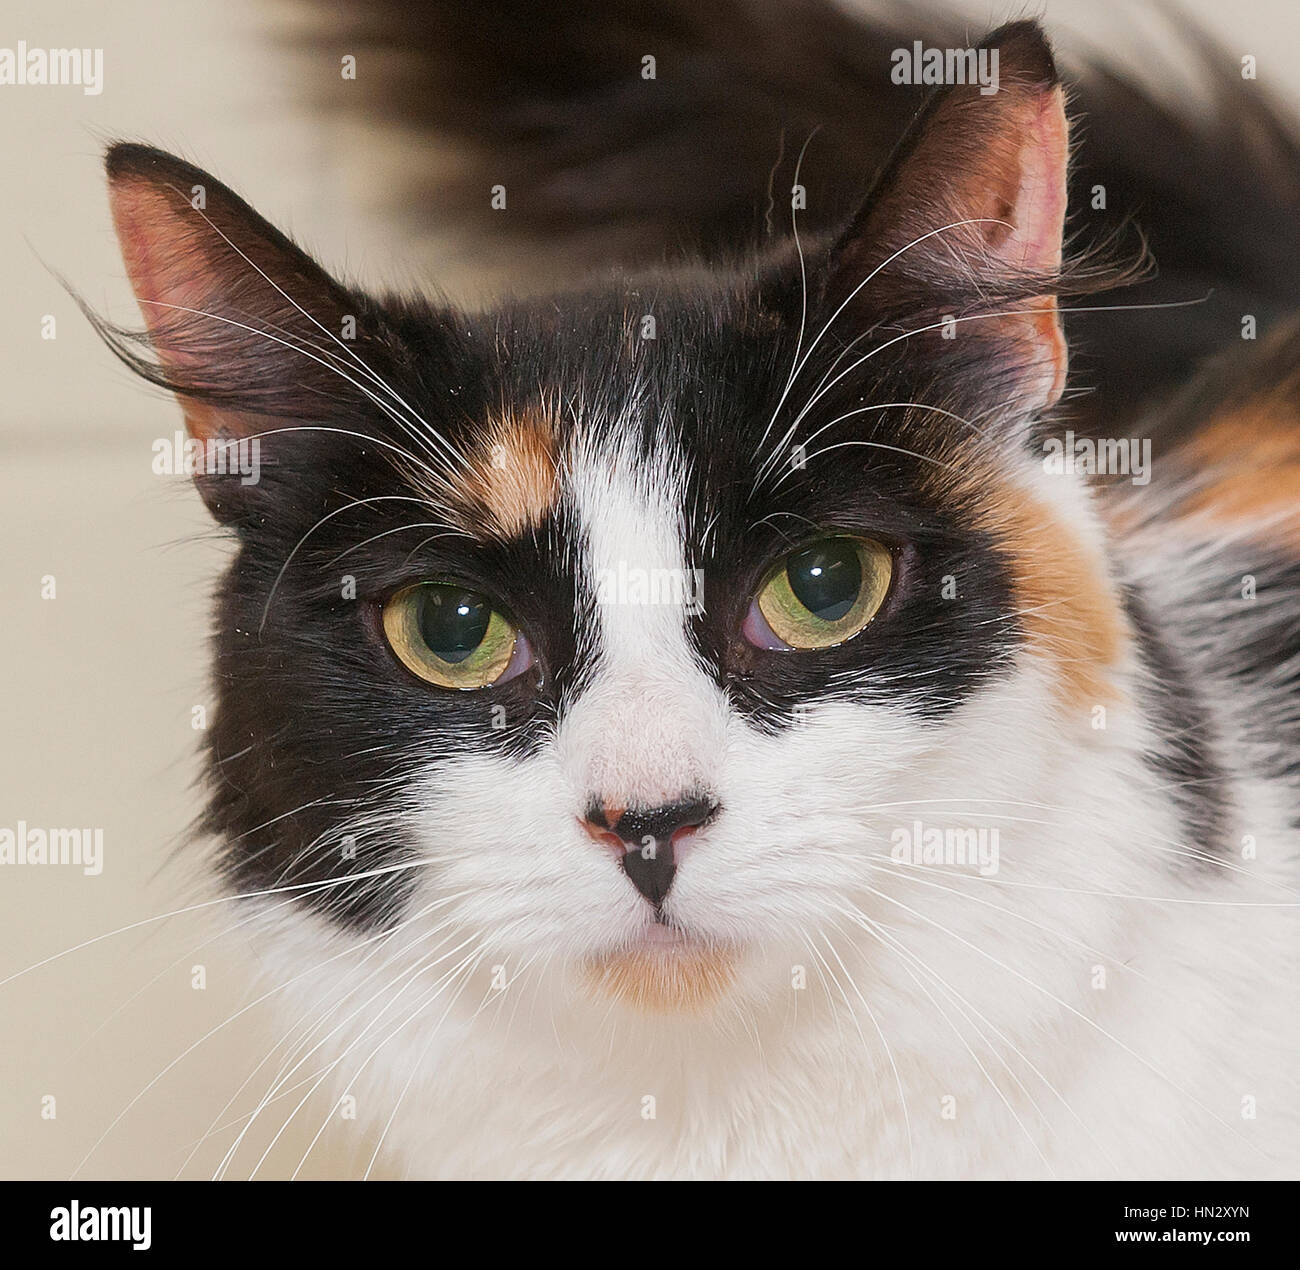 Splendido calico gatto con occhi ambrati primo piano testa guardando la macchina fotografica Foto Stock